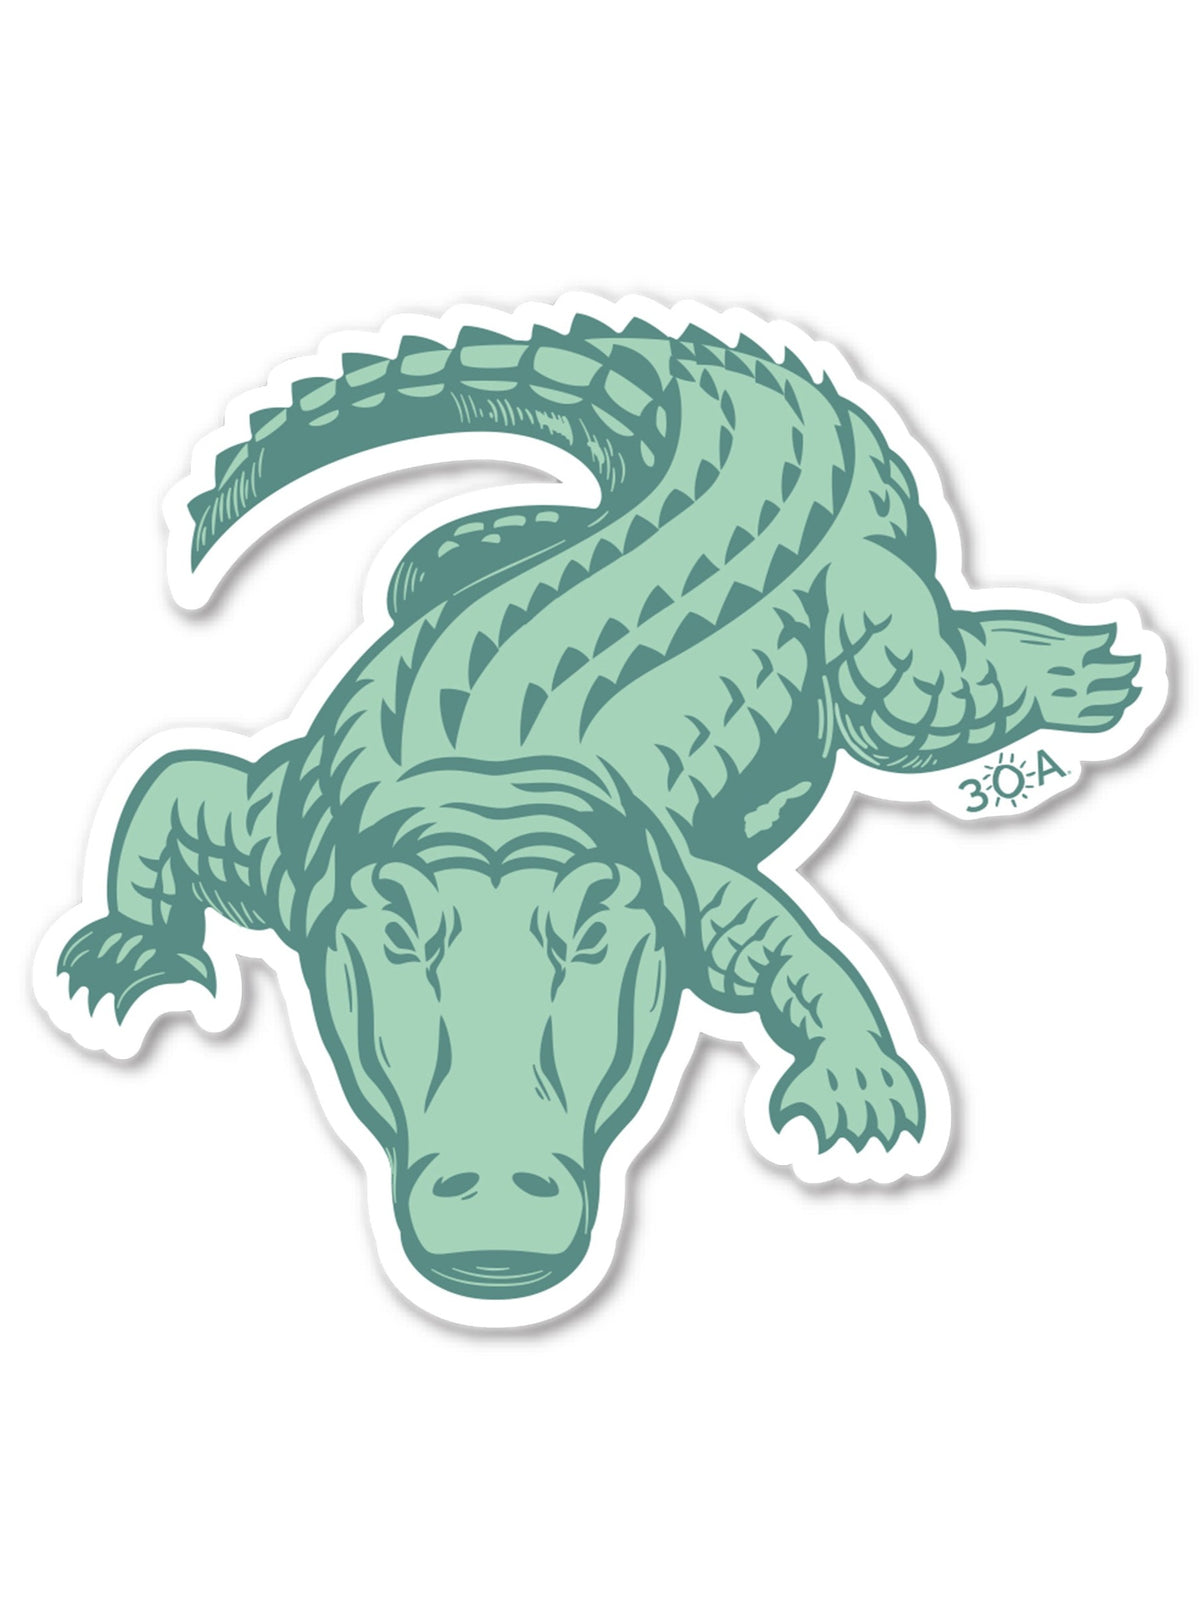 30A Alligator Sticker